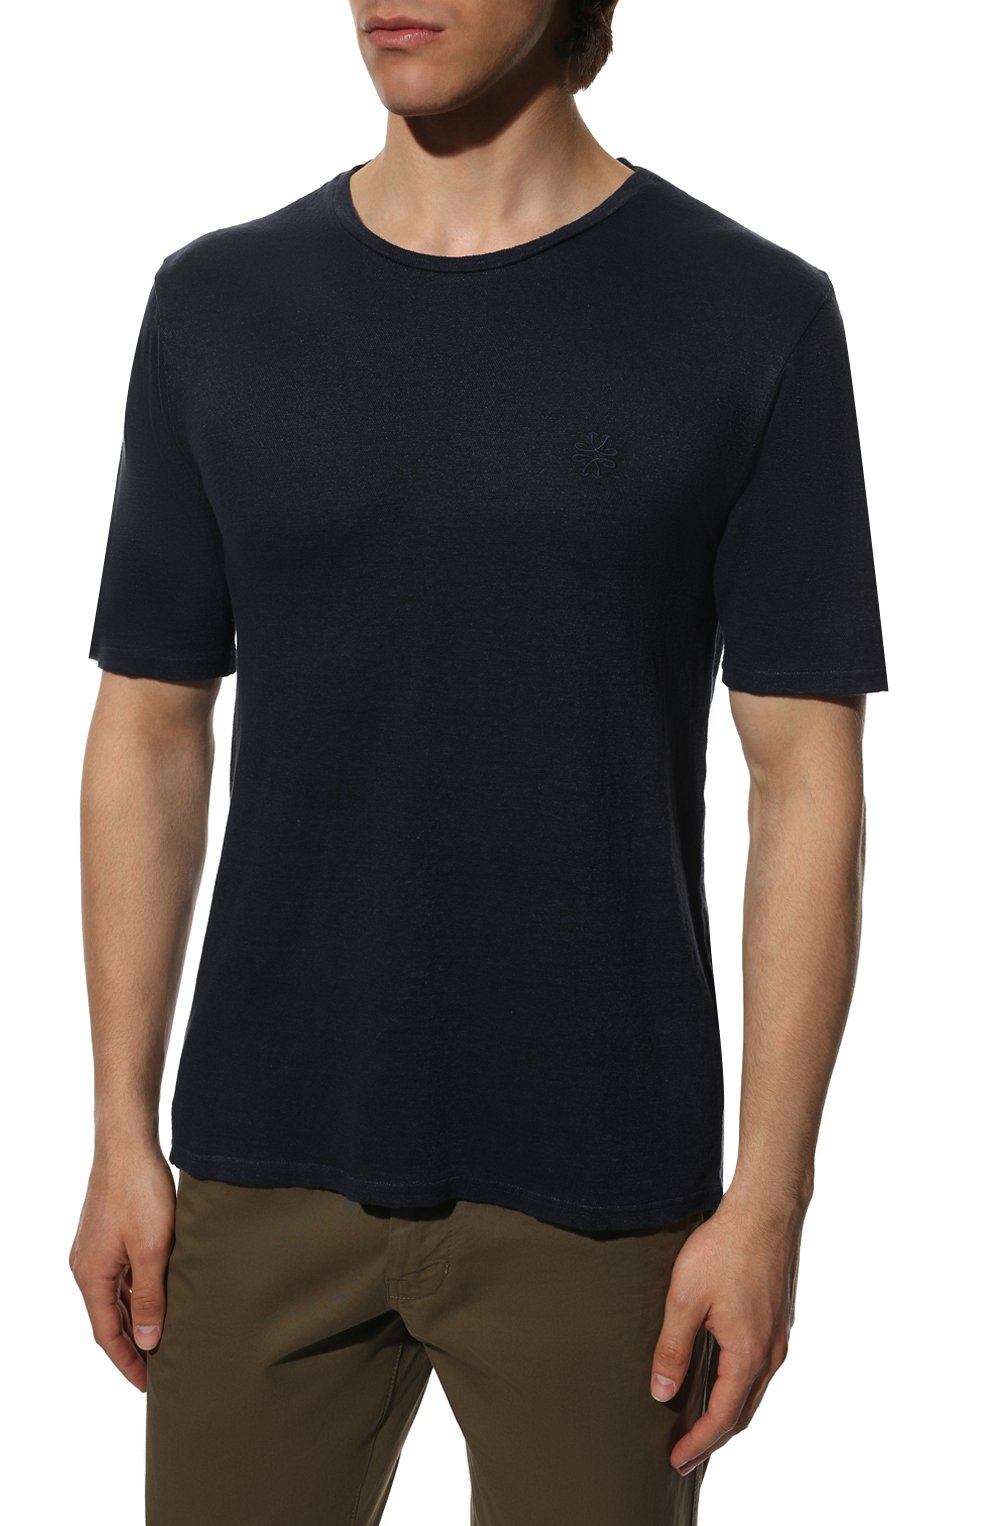 Мужская льняная футболка JACOB COHEN темно-синего цвета, арт. U 4 002 05 M 4371/Y99 | Фото 3 (Принт: Без принта; Рукава: Короткие; Длина (для топов): Стандартные; Материал внешний: Лен; Стили: Кэжуэл)